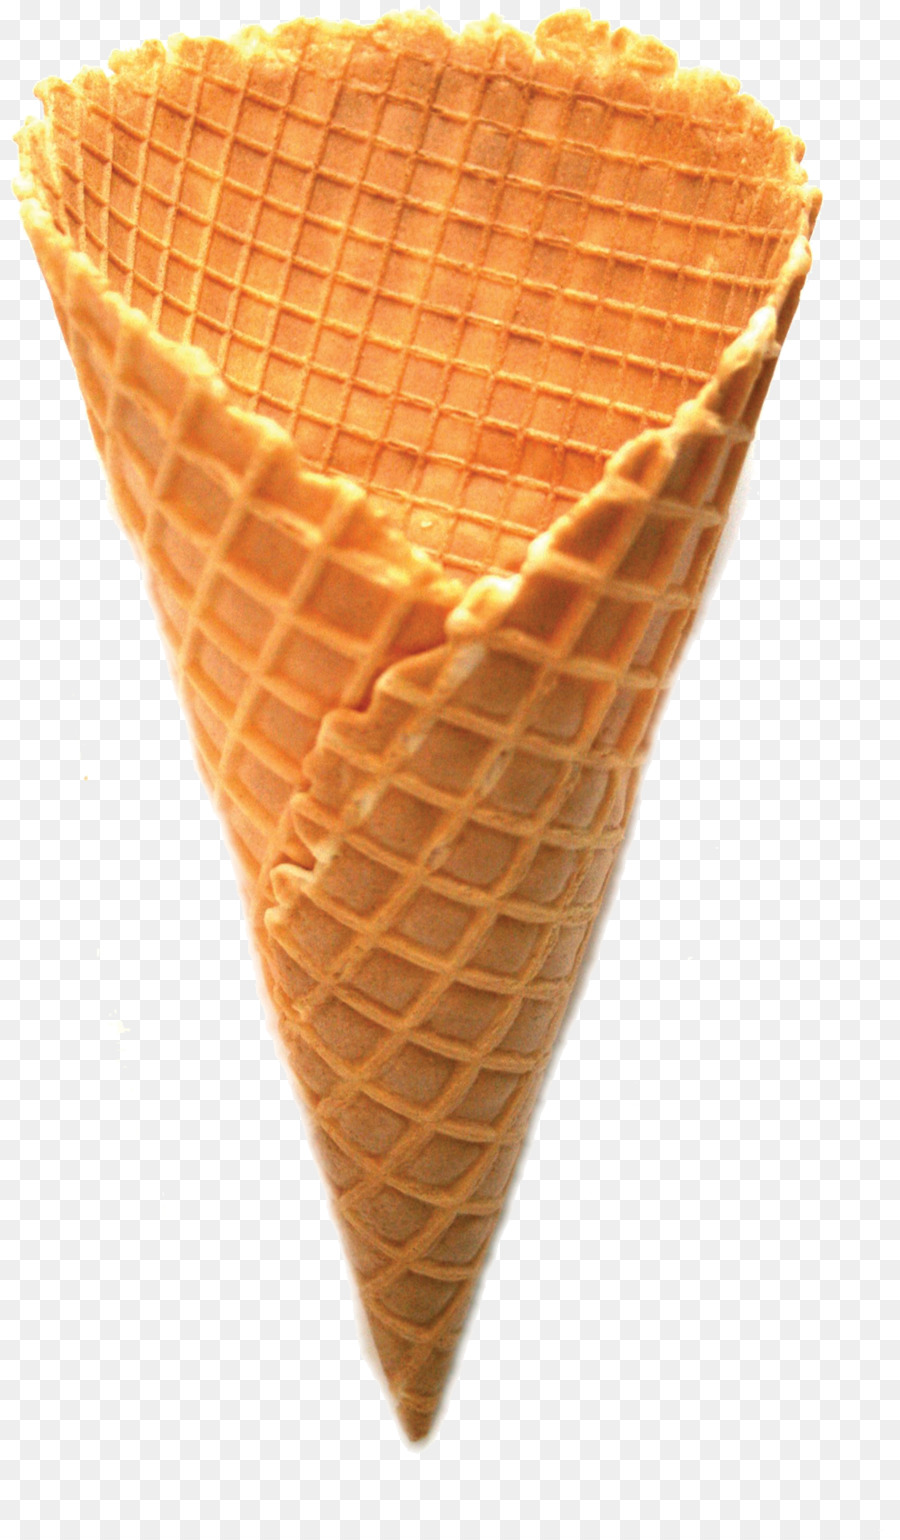 Ice Cream Cones Waffle Sundae - CREAM png download - 1012*1721 - Free Transparent Ice Cream Cones png Download.